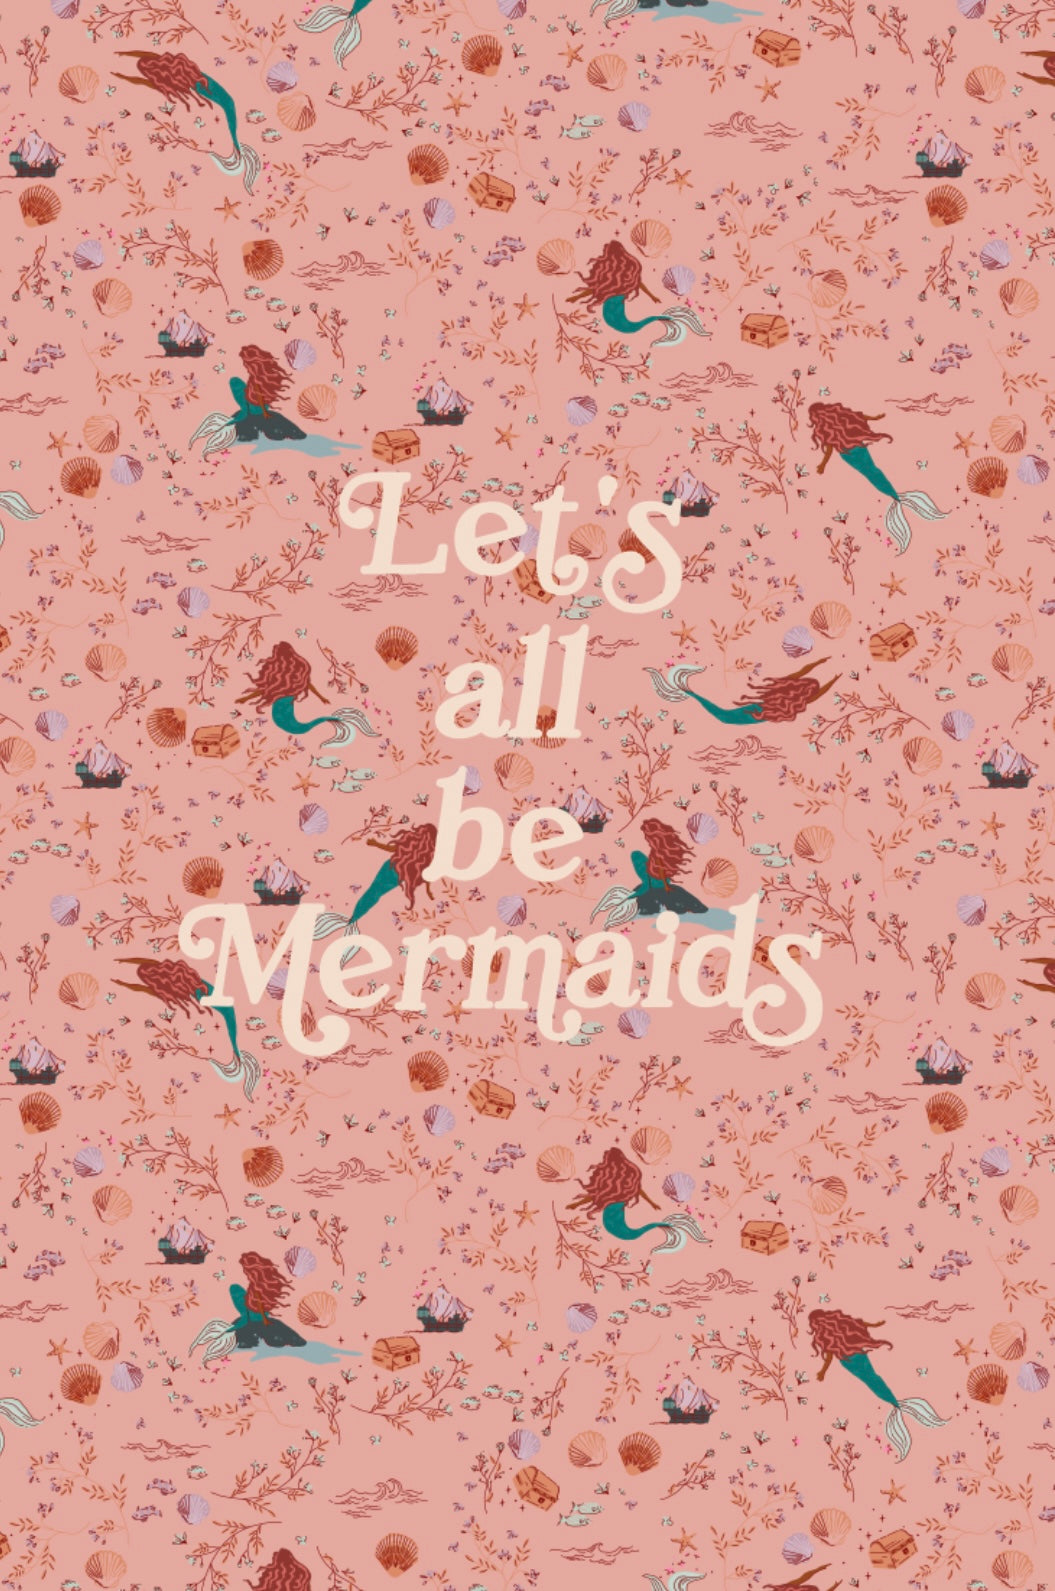 Let’s all be mermaids